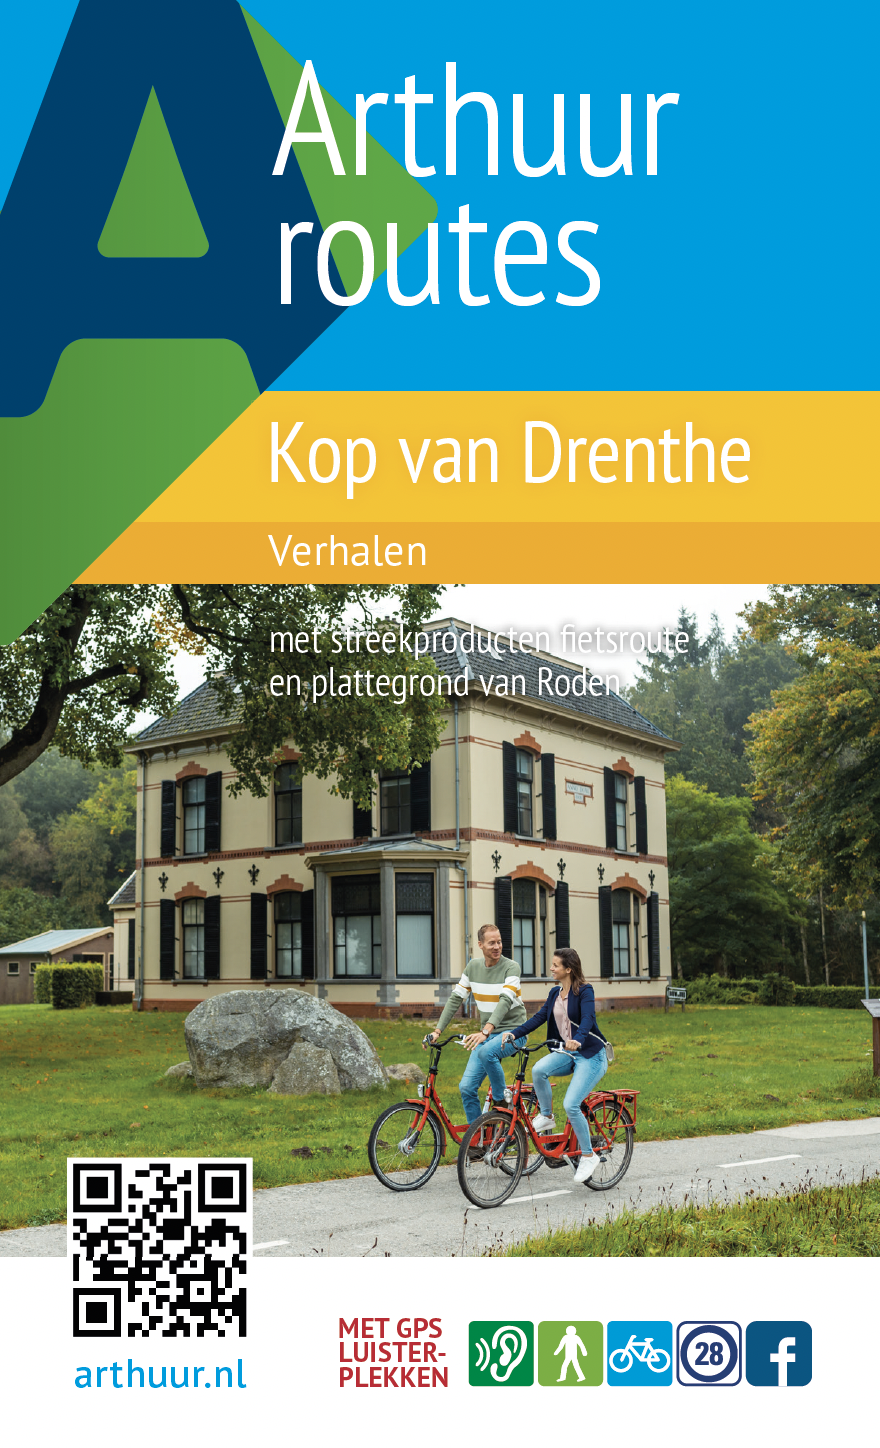 Arthuur Routes routeverhalen brochure Kop van Drenthe met titel en foto met twee actieve fietsers.